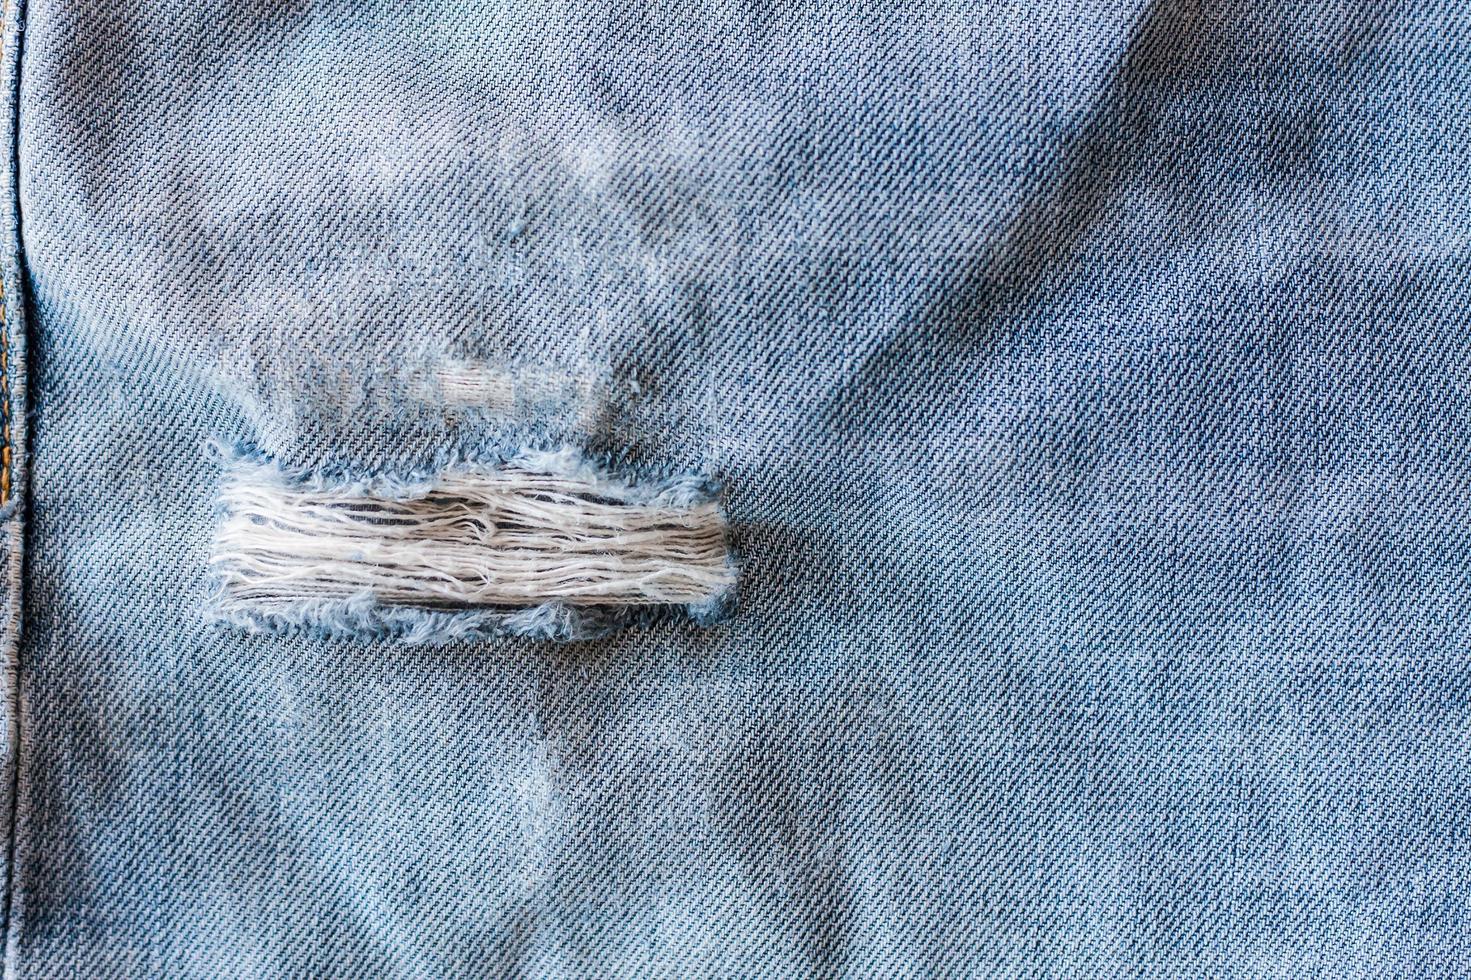 Jeans zerrissene Denim-Textur foto